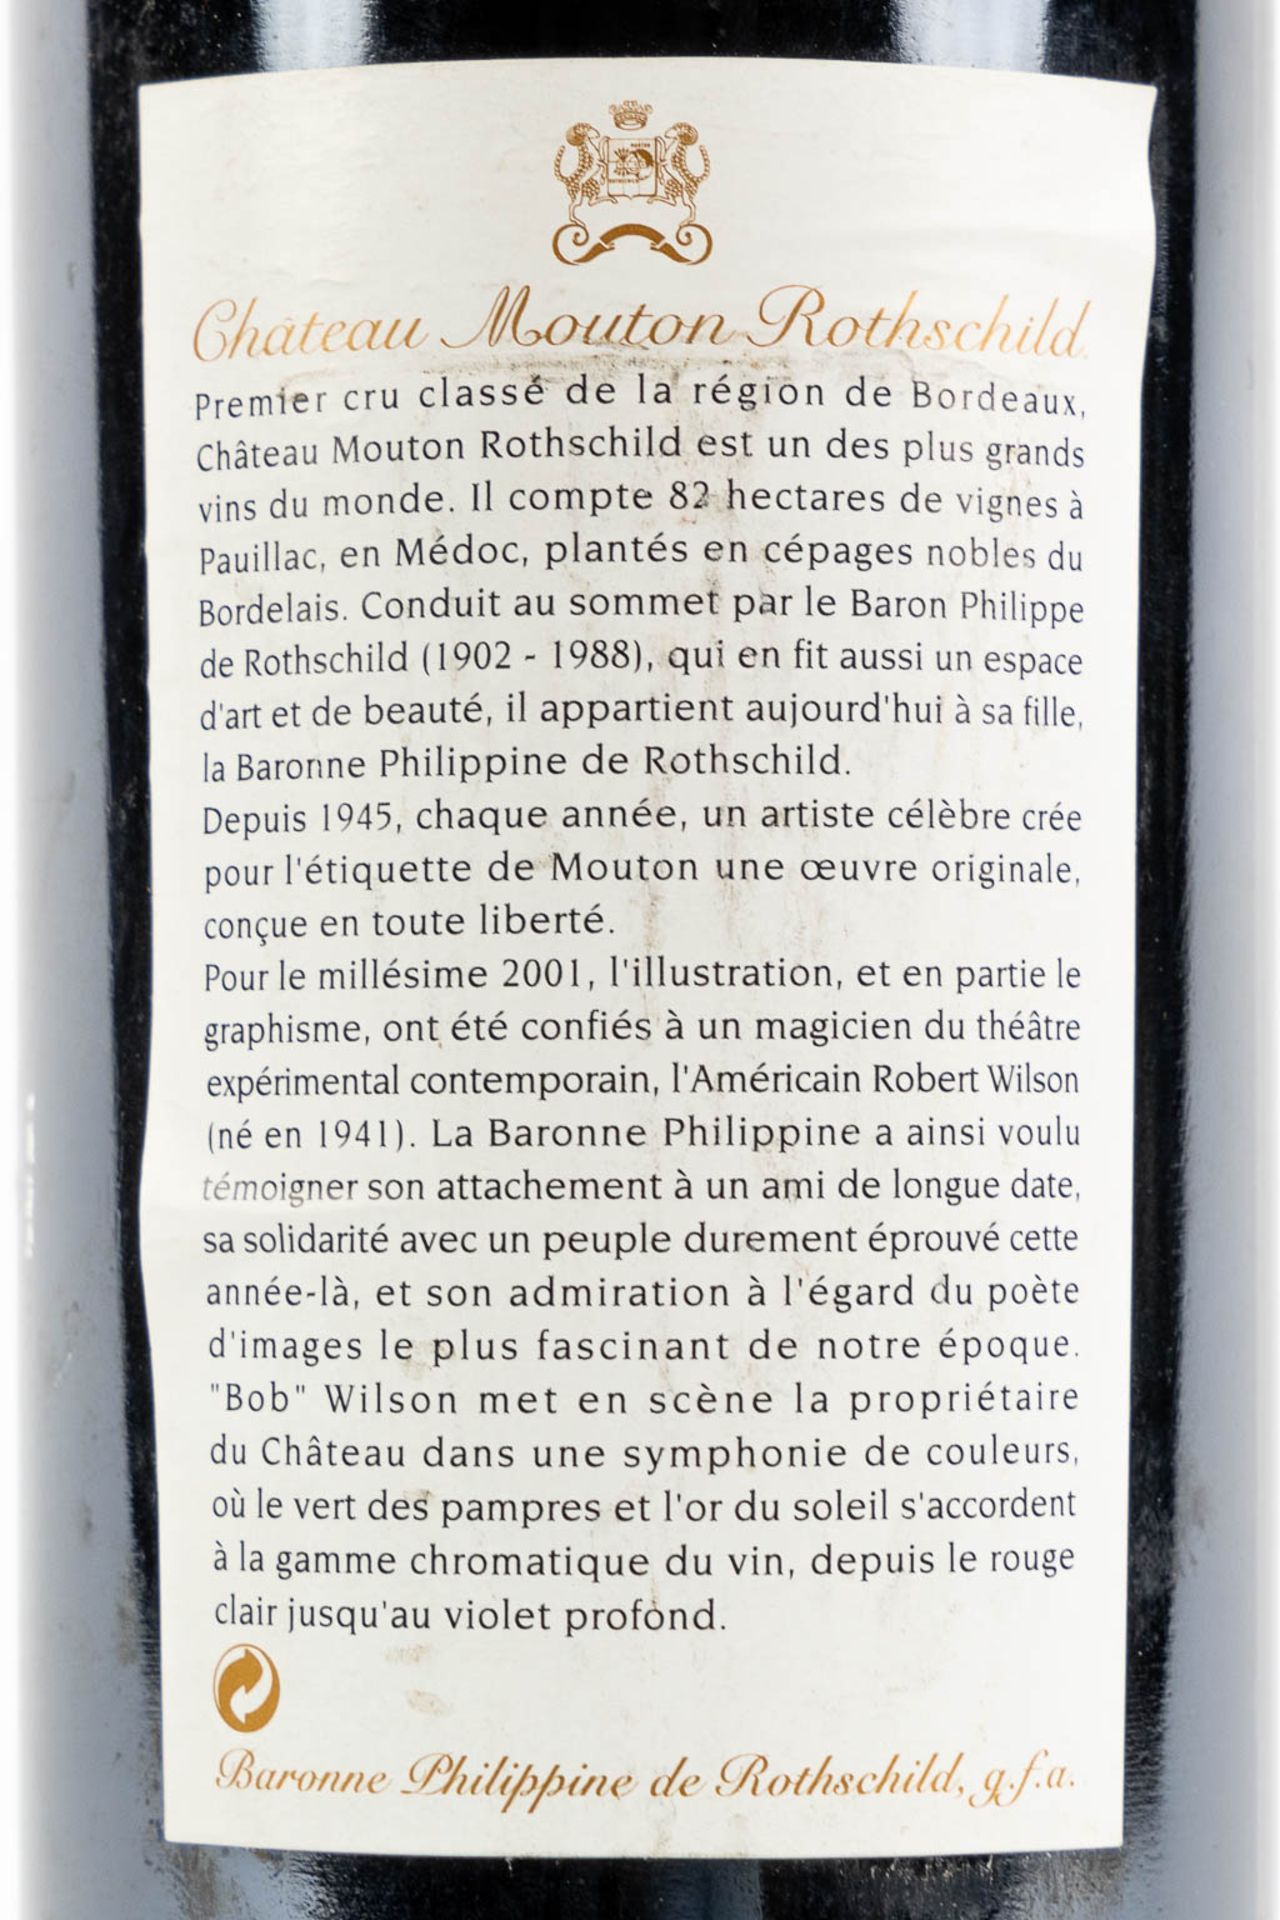 2001 Château Mouton Rothschild, Robert Wilson - Image 3 of 3